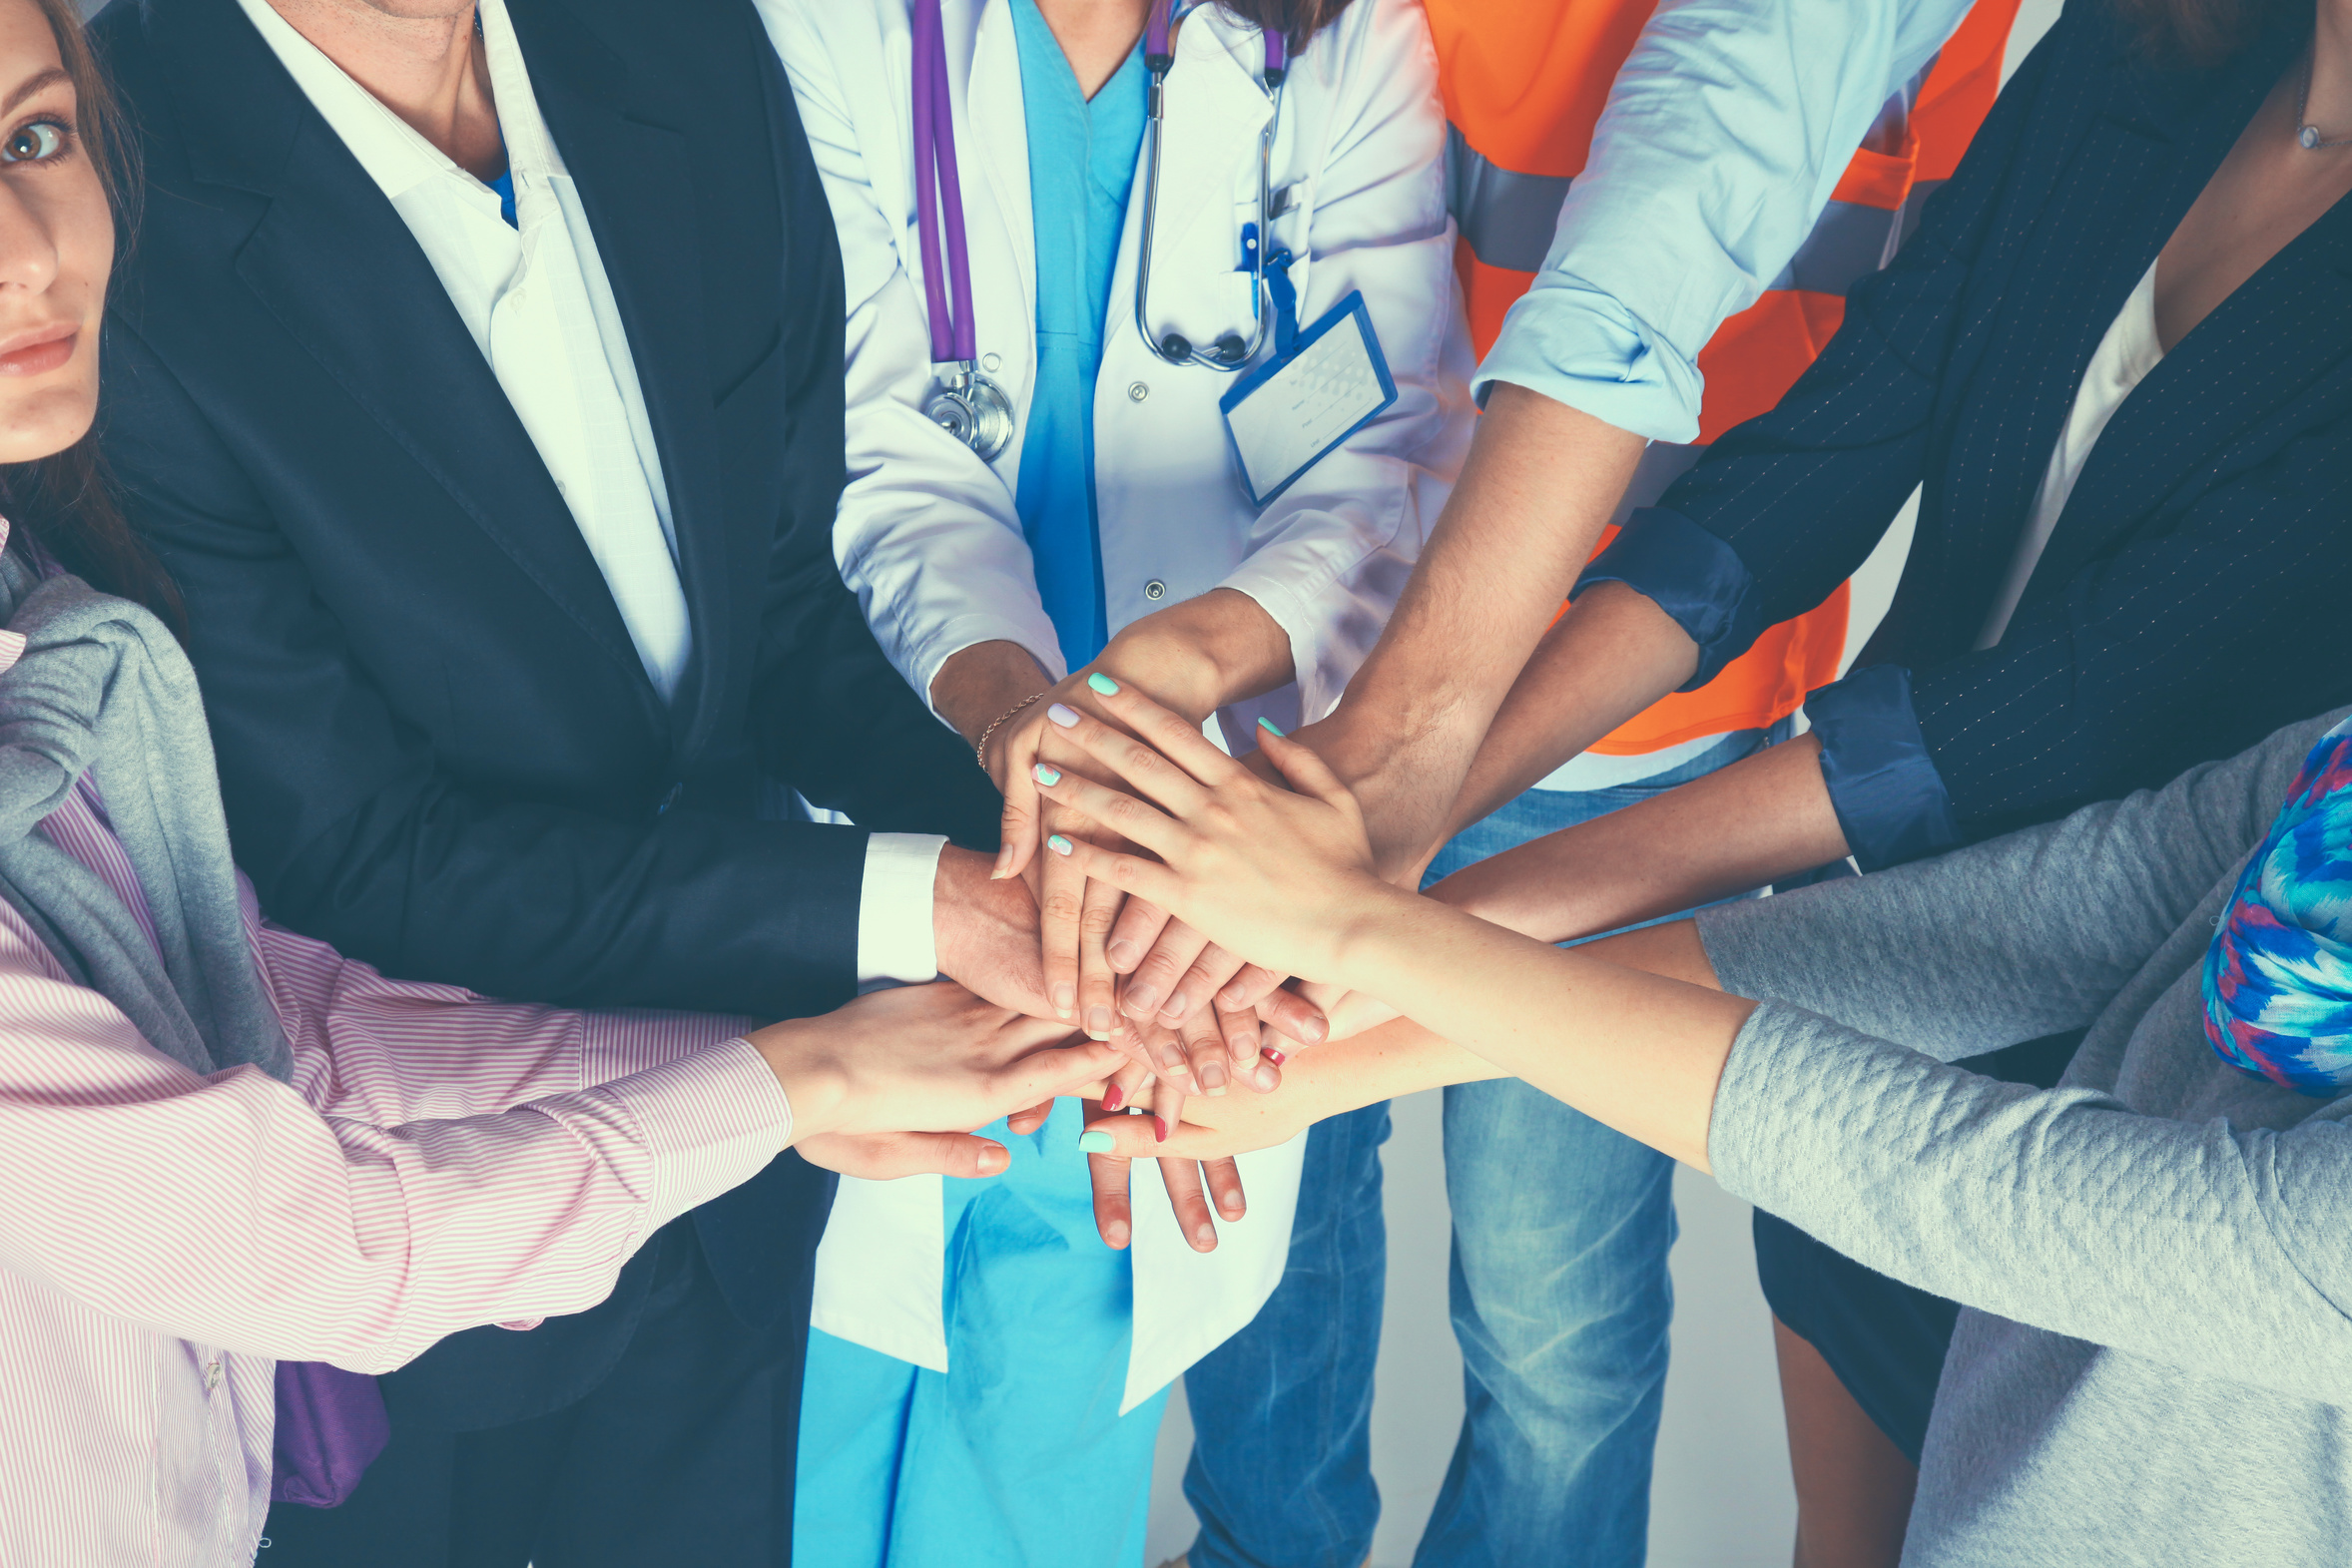 Titelfoto: Fachgruppe Management. Eine Gruppe Personen legt ihre Hände übereinander.